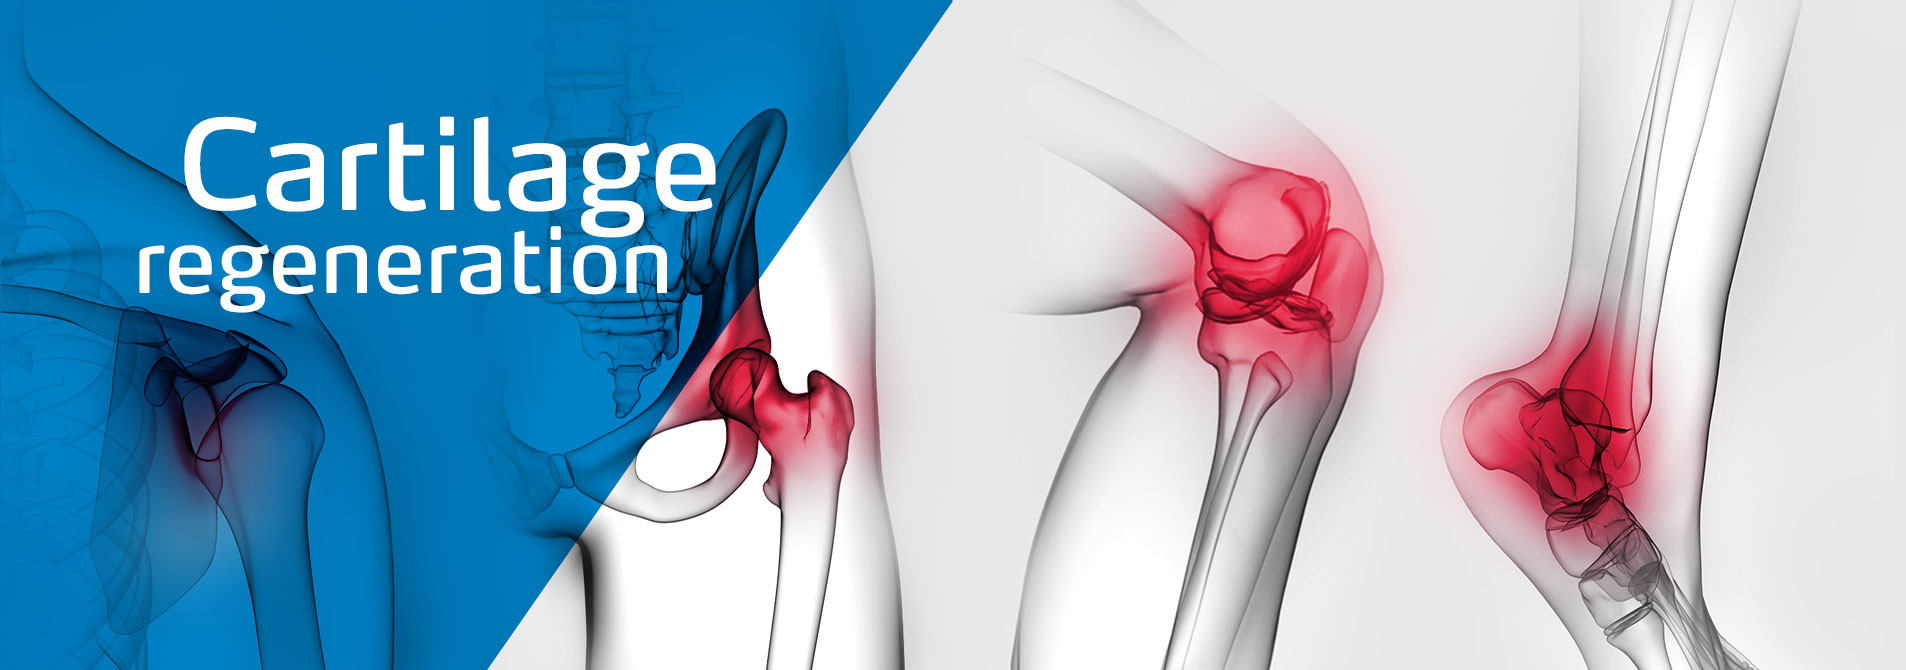 meidrix header image: cartilage regeneration